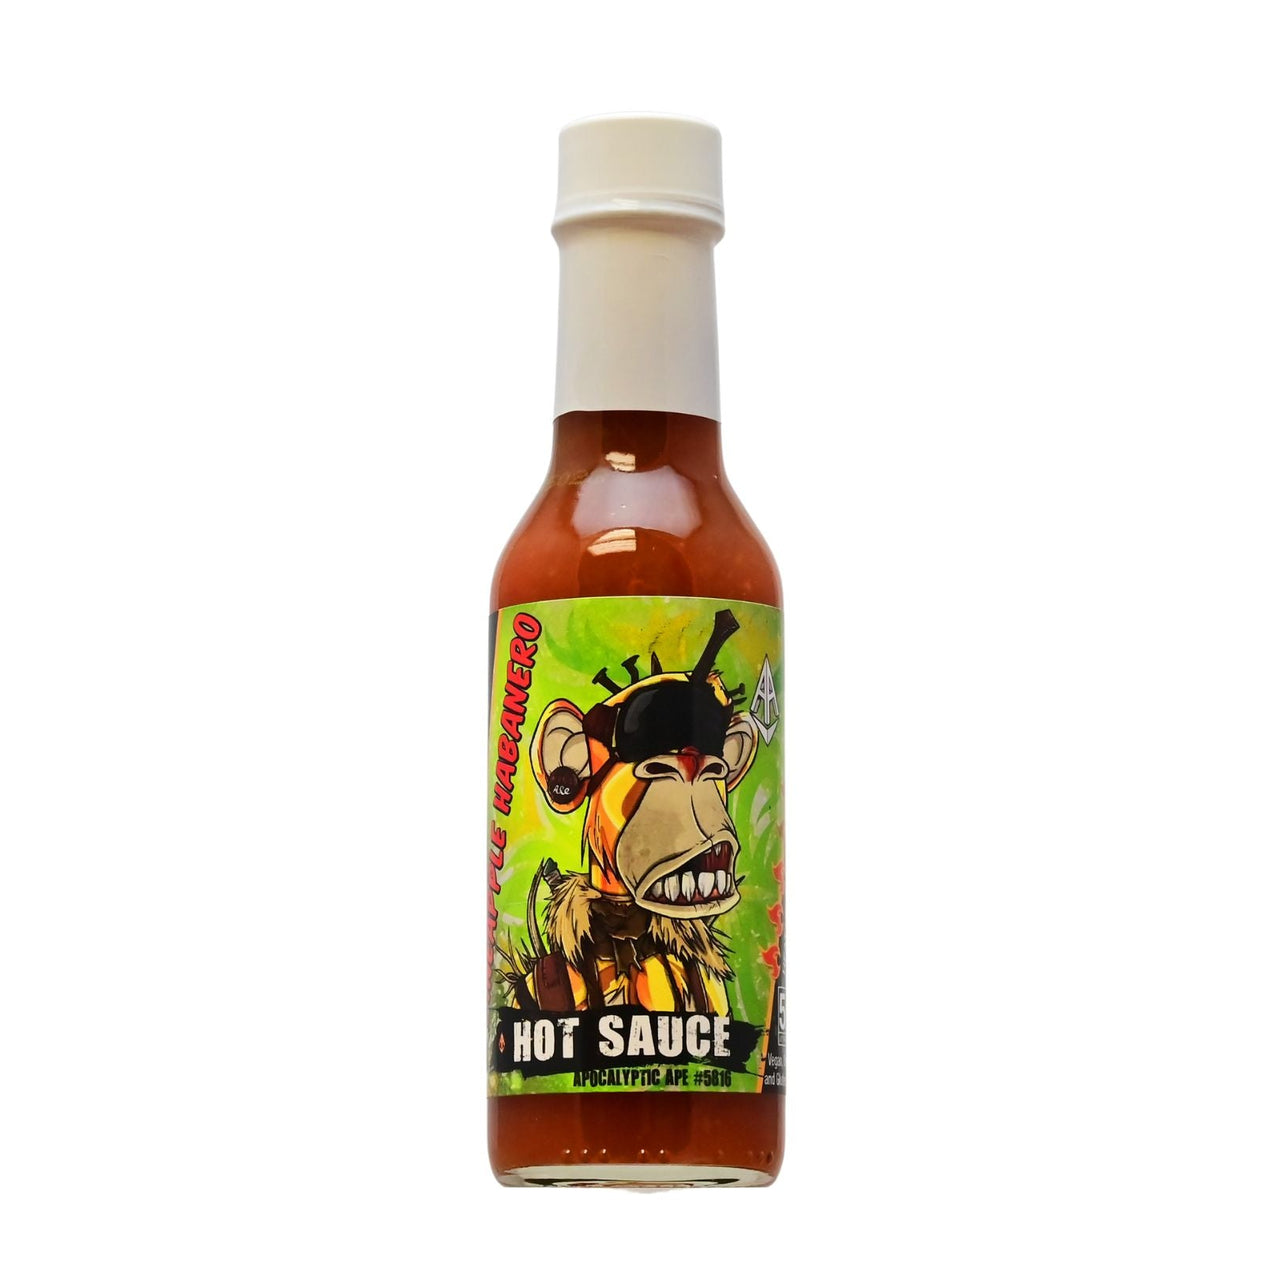 Apocalyptic Ape #5816 Pineapple Habanero Hot Sauce